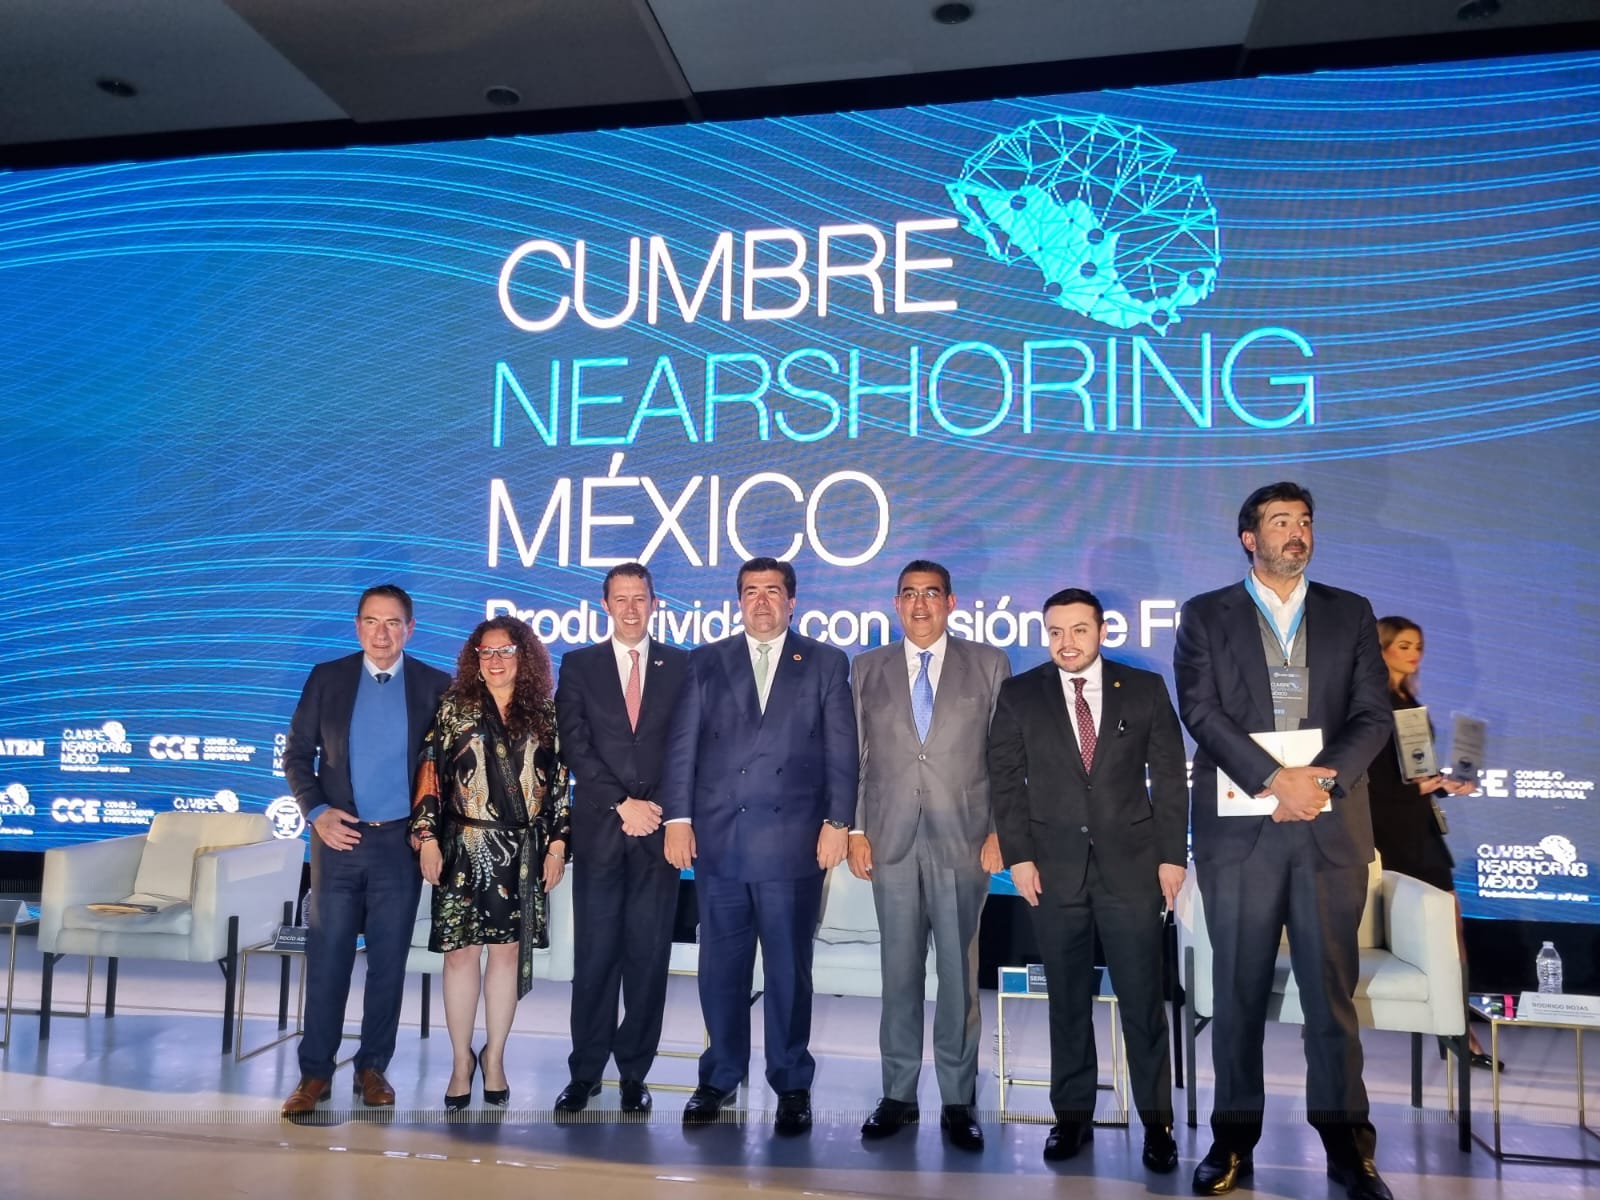 Salarios, infraestructura y viabilidad energética, entre los retos destacados en la primera Cumbre Nearshoring México